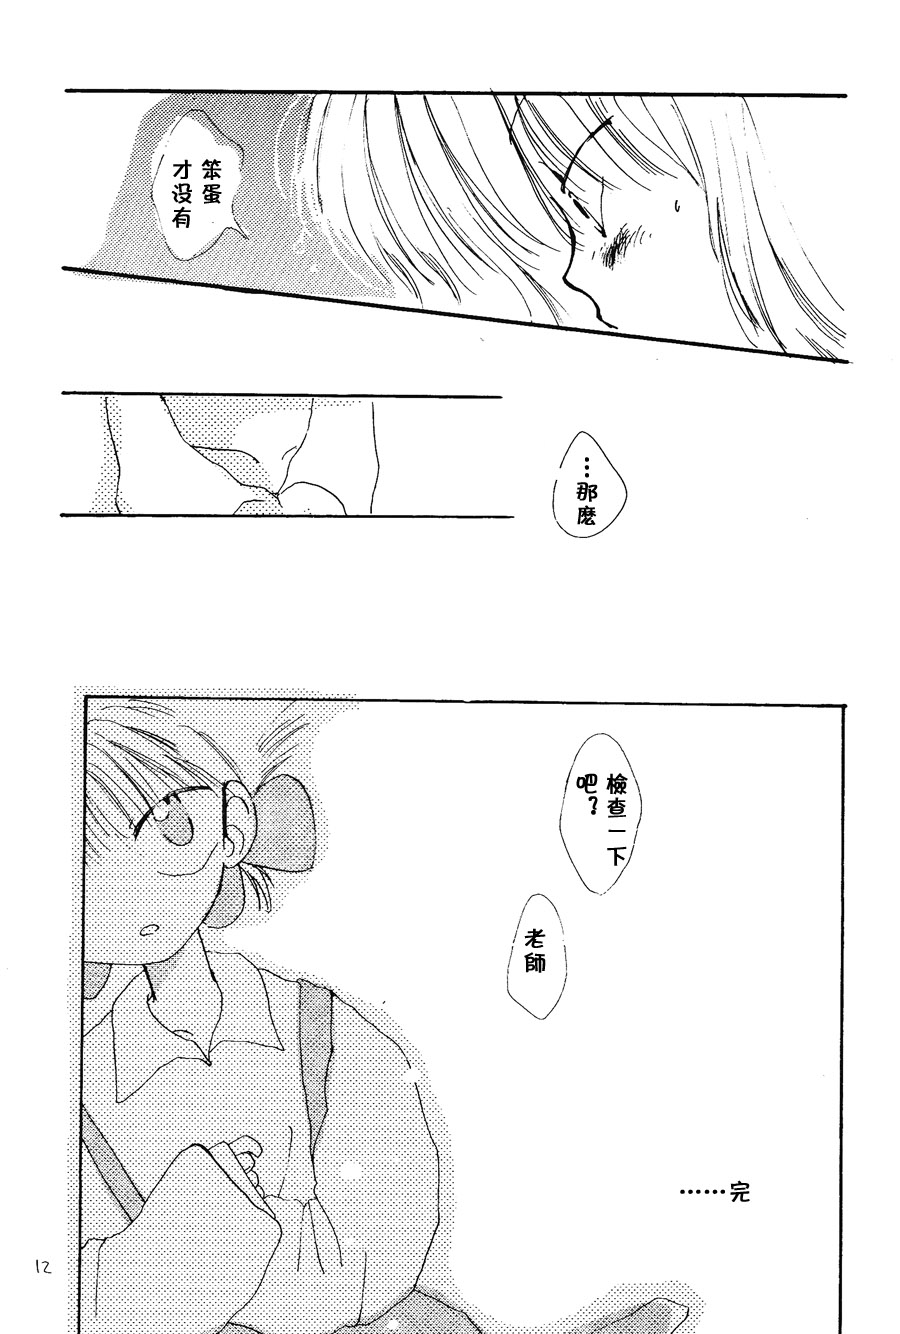 【漫画】PIKAPIKA/タカハシマコ《彩虹维奥莱塔》 Img_6879